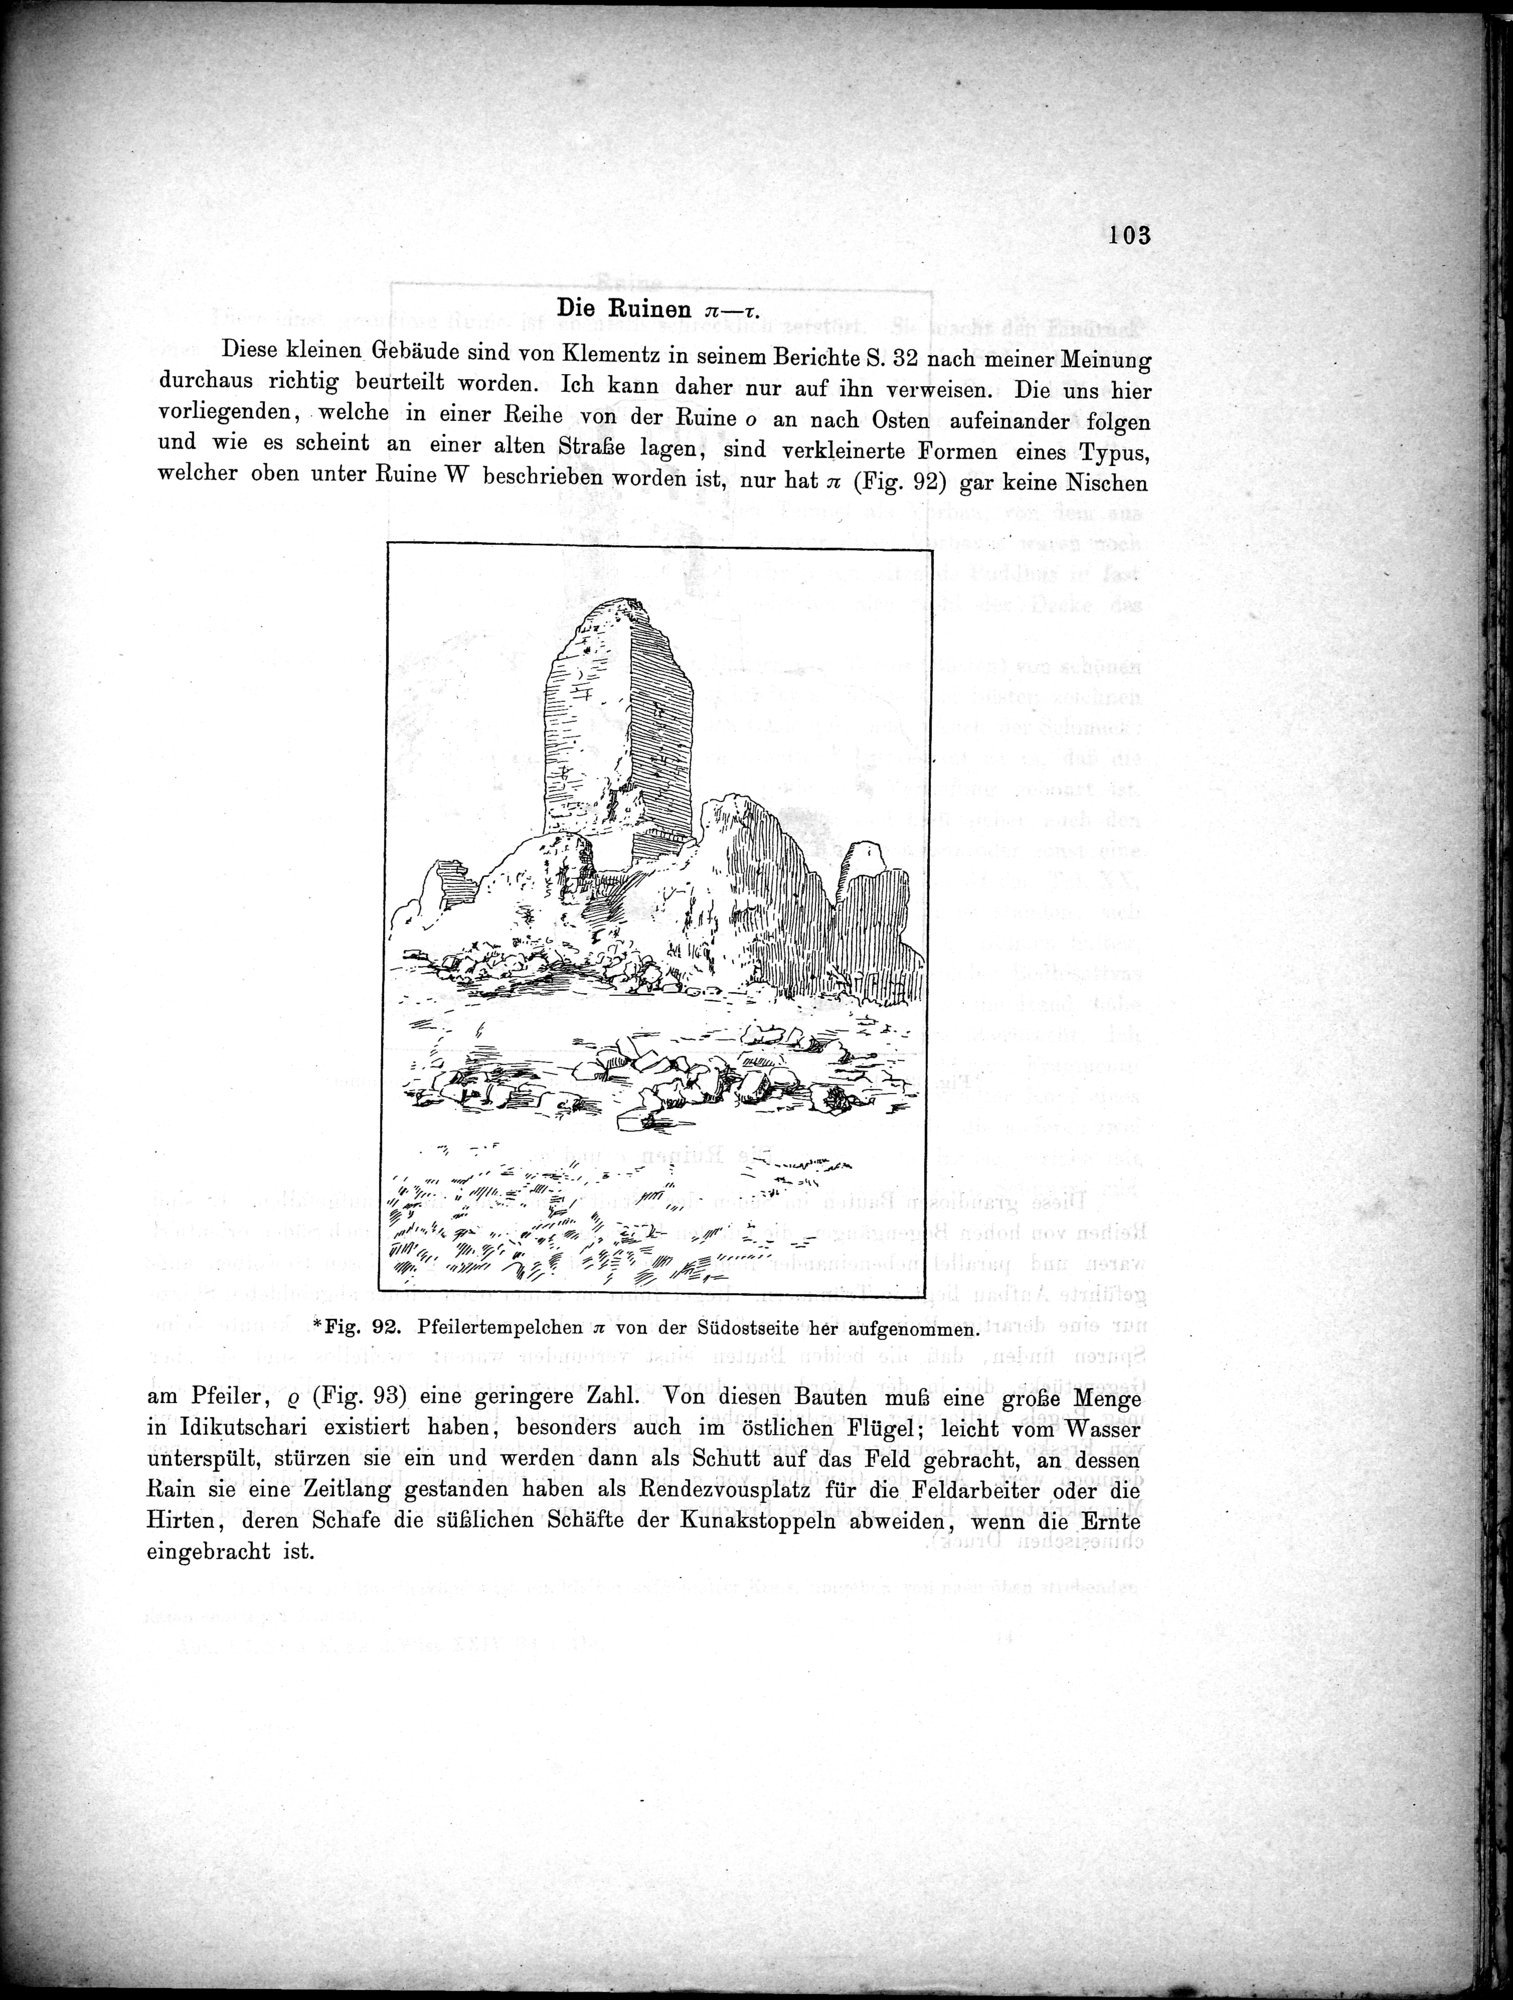 Bericht über archäologische Arbeiten in Idikutschari und Umgebung im Winter 1902-1903 : vol.1 / Page 113 (Grayscale High Resolution Image)